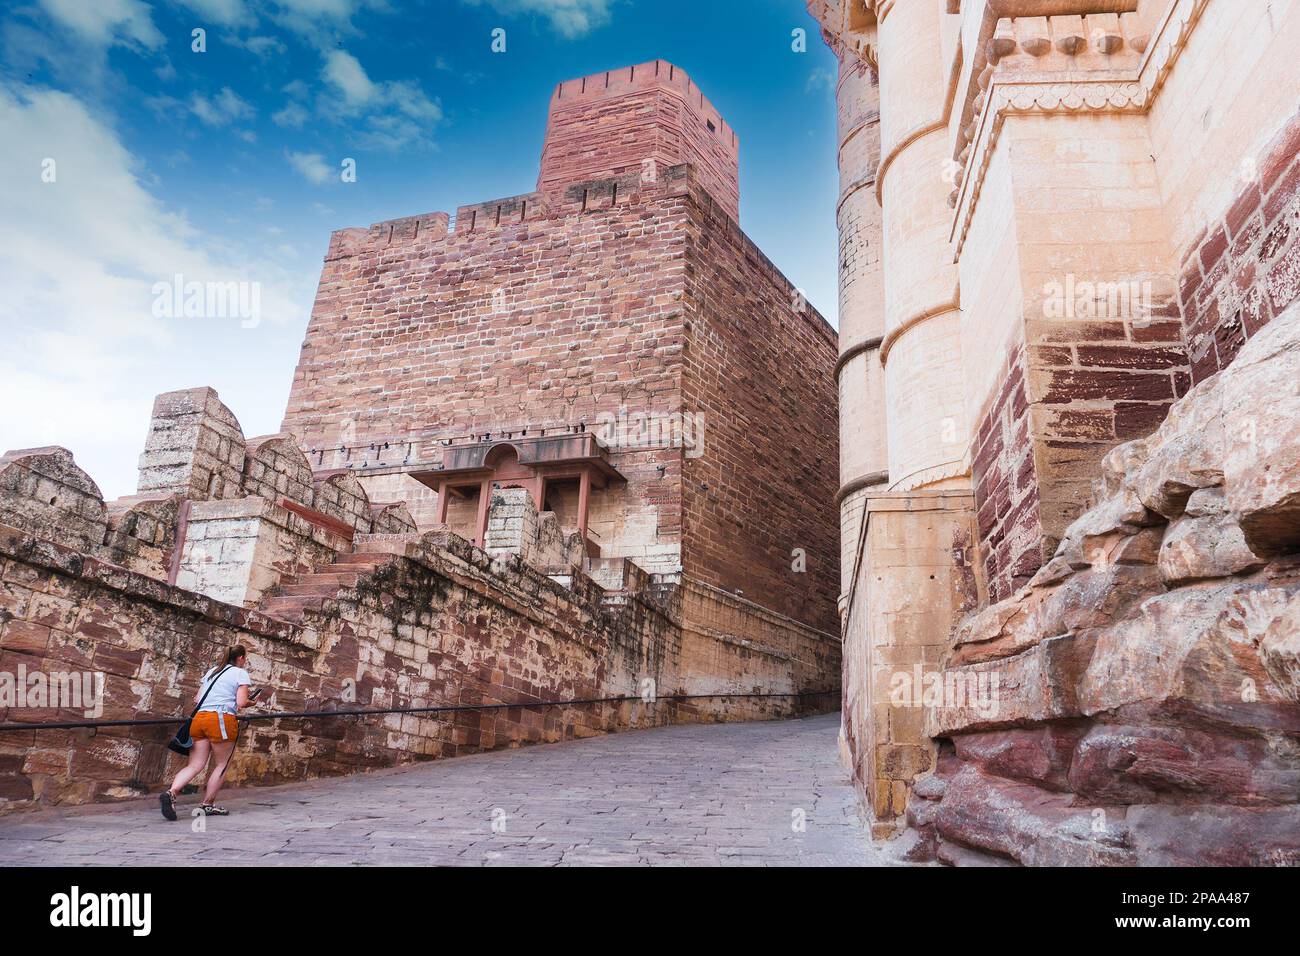 Jodhpur, Rajasthan, India - 19 ottobre 2019: Turista straniera che sale sul famoso forte di Mehrangarh, il forte di Mehrangarh è patrimonio dell'umanità dell'UNESCO. Foto Stock